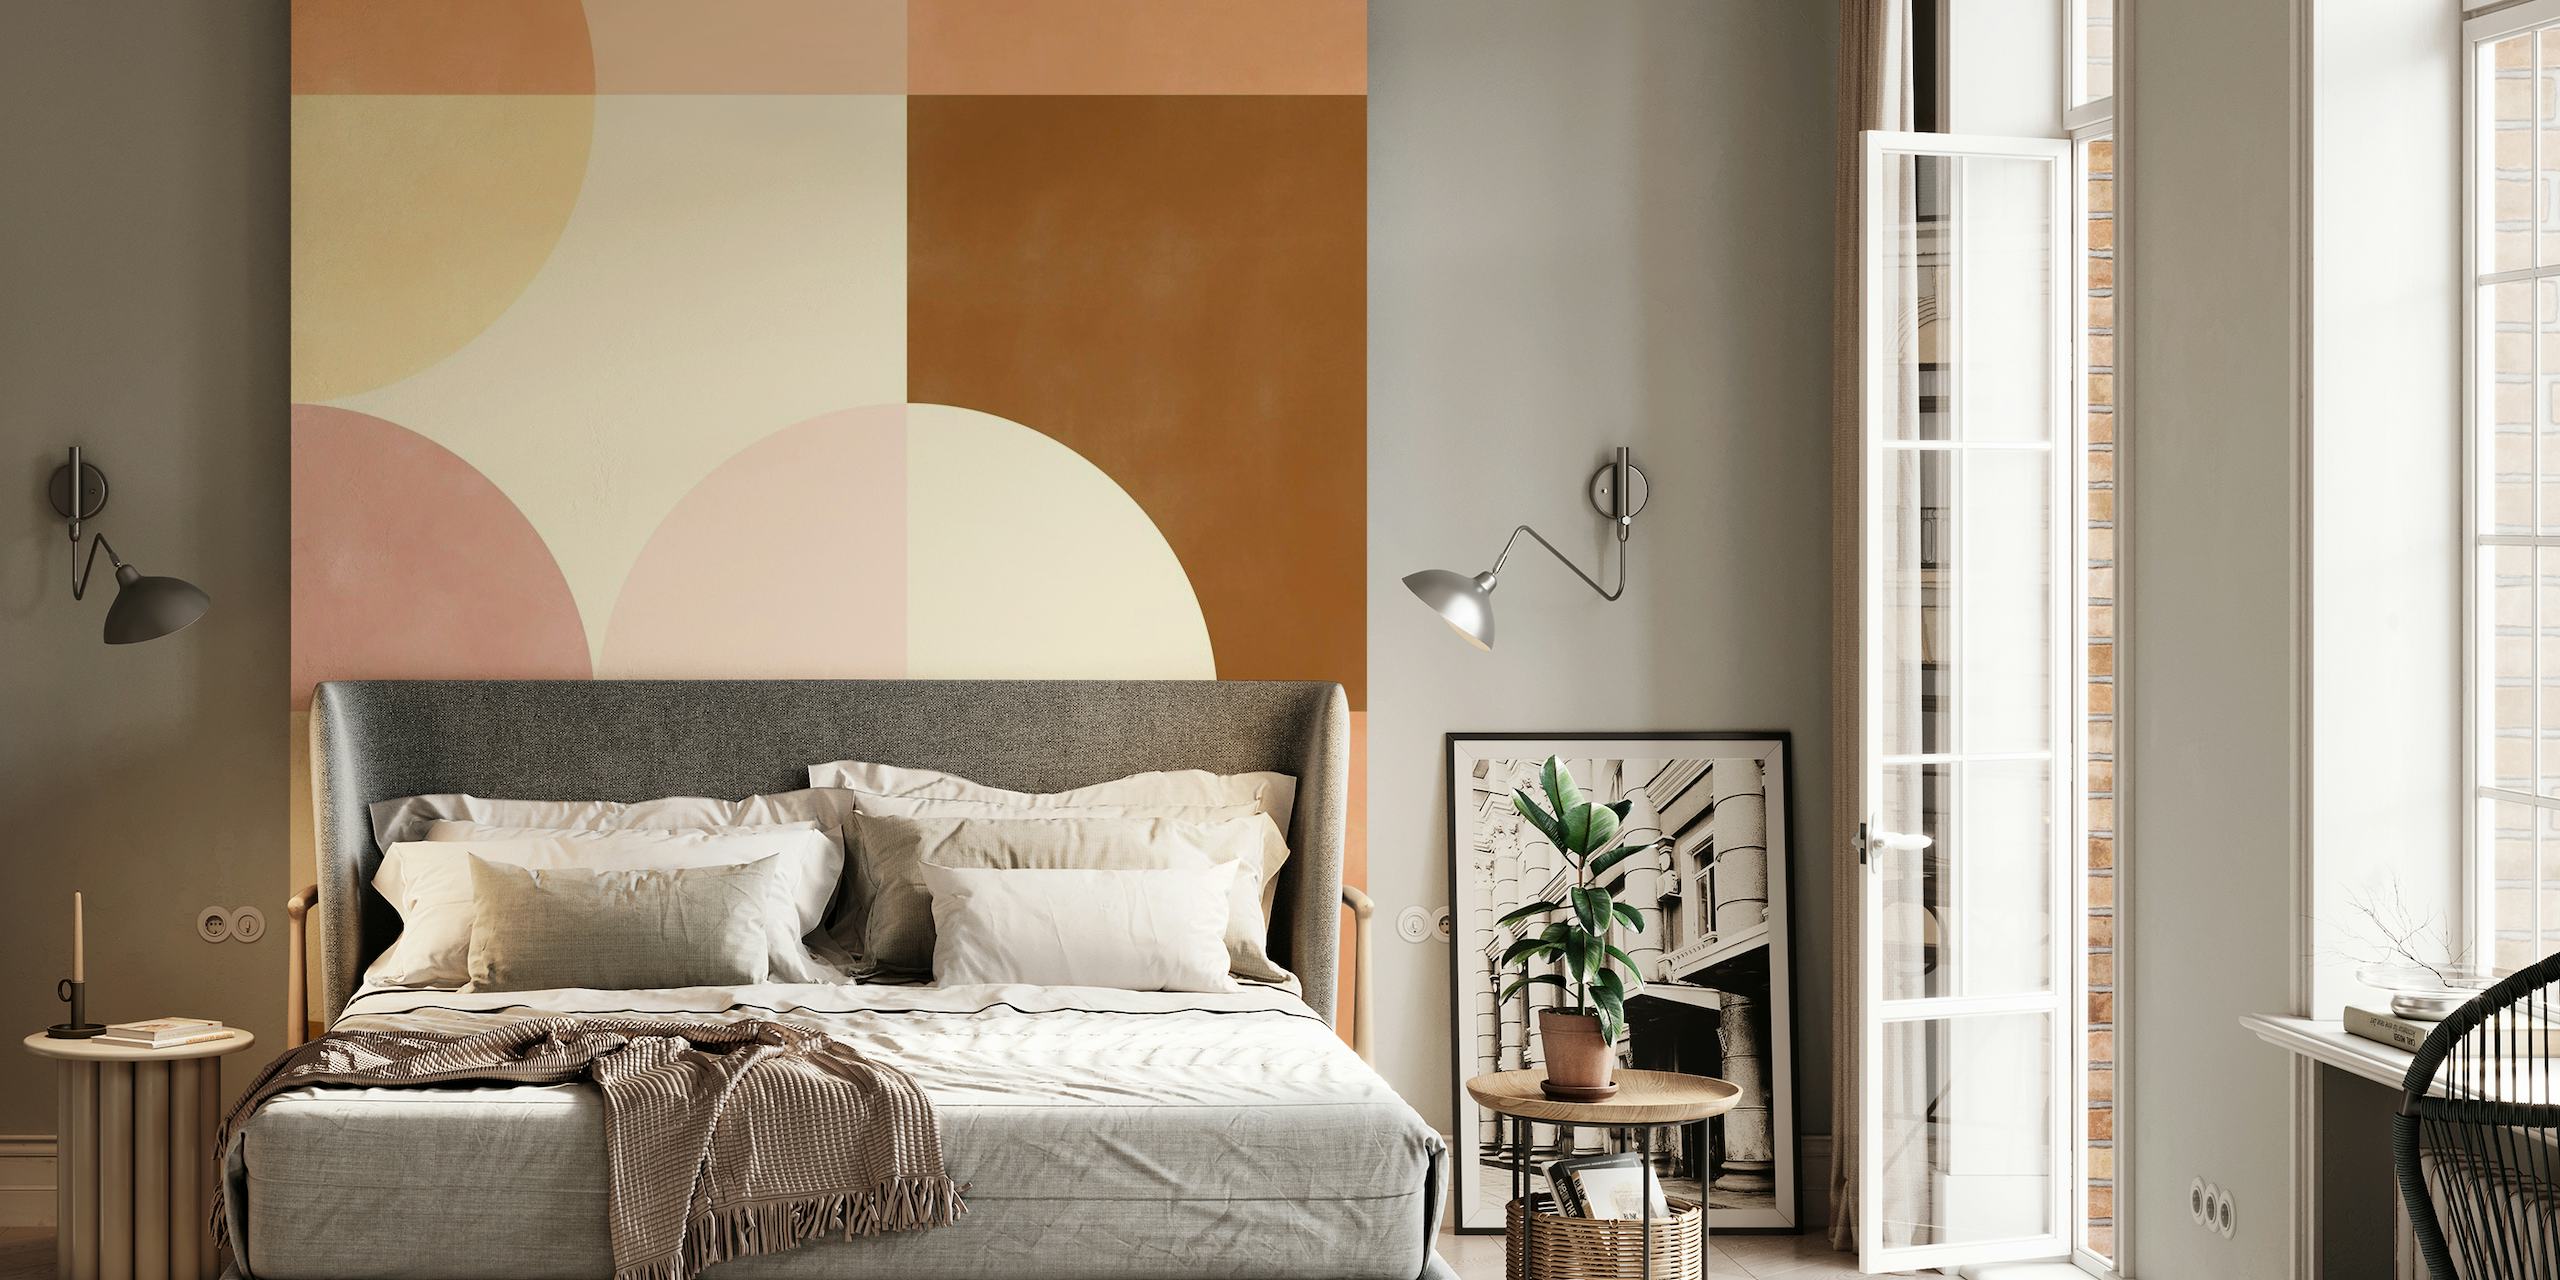 Abstrakt geometrisk vægmaleri i blød pink og jordbrune toner